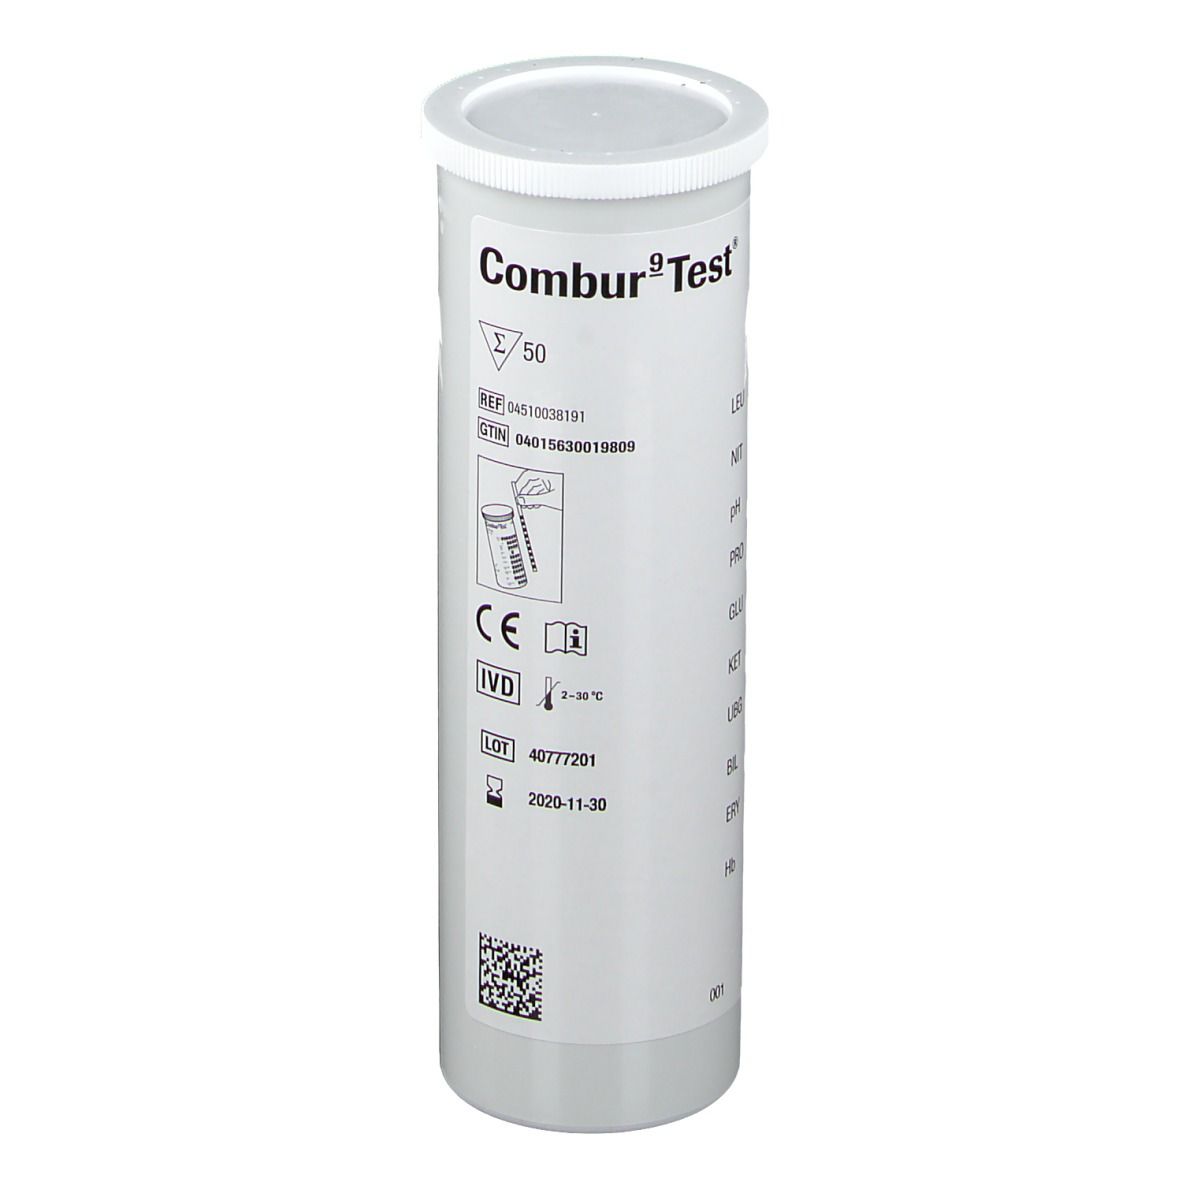 Combur 9 Test® Teststreifen